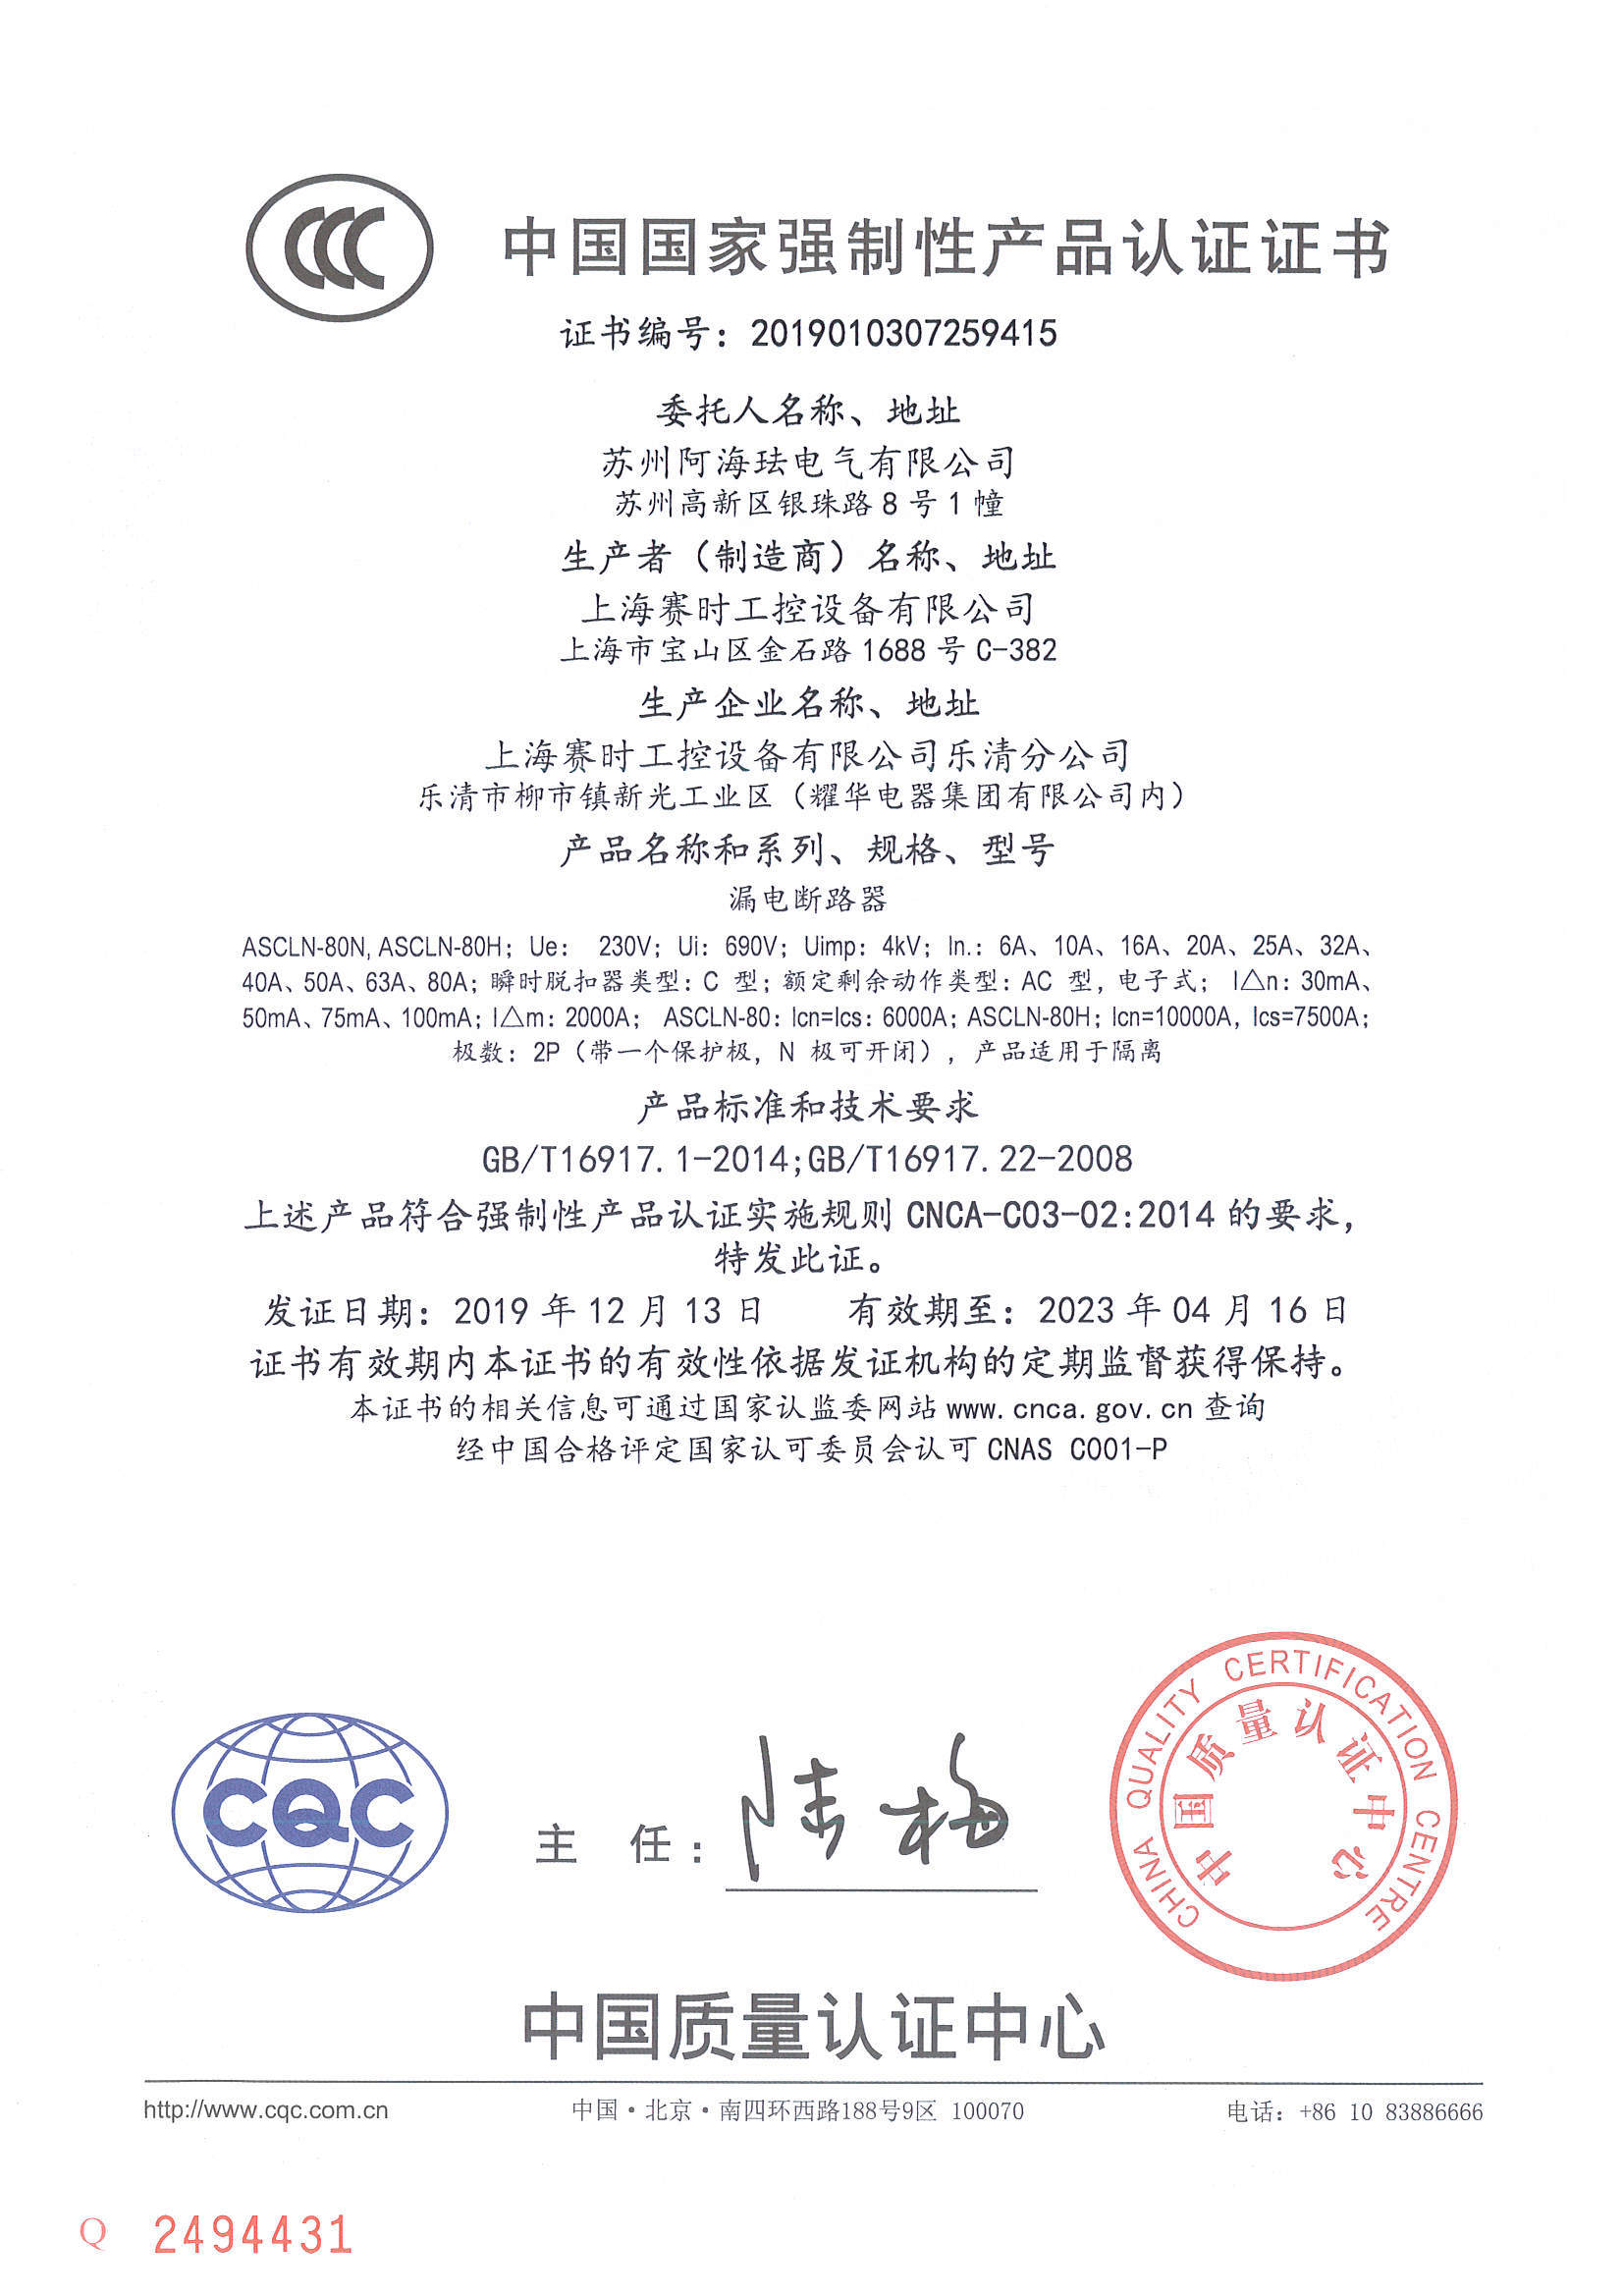 ASCLN-80 CCC Certificate